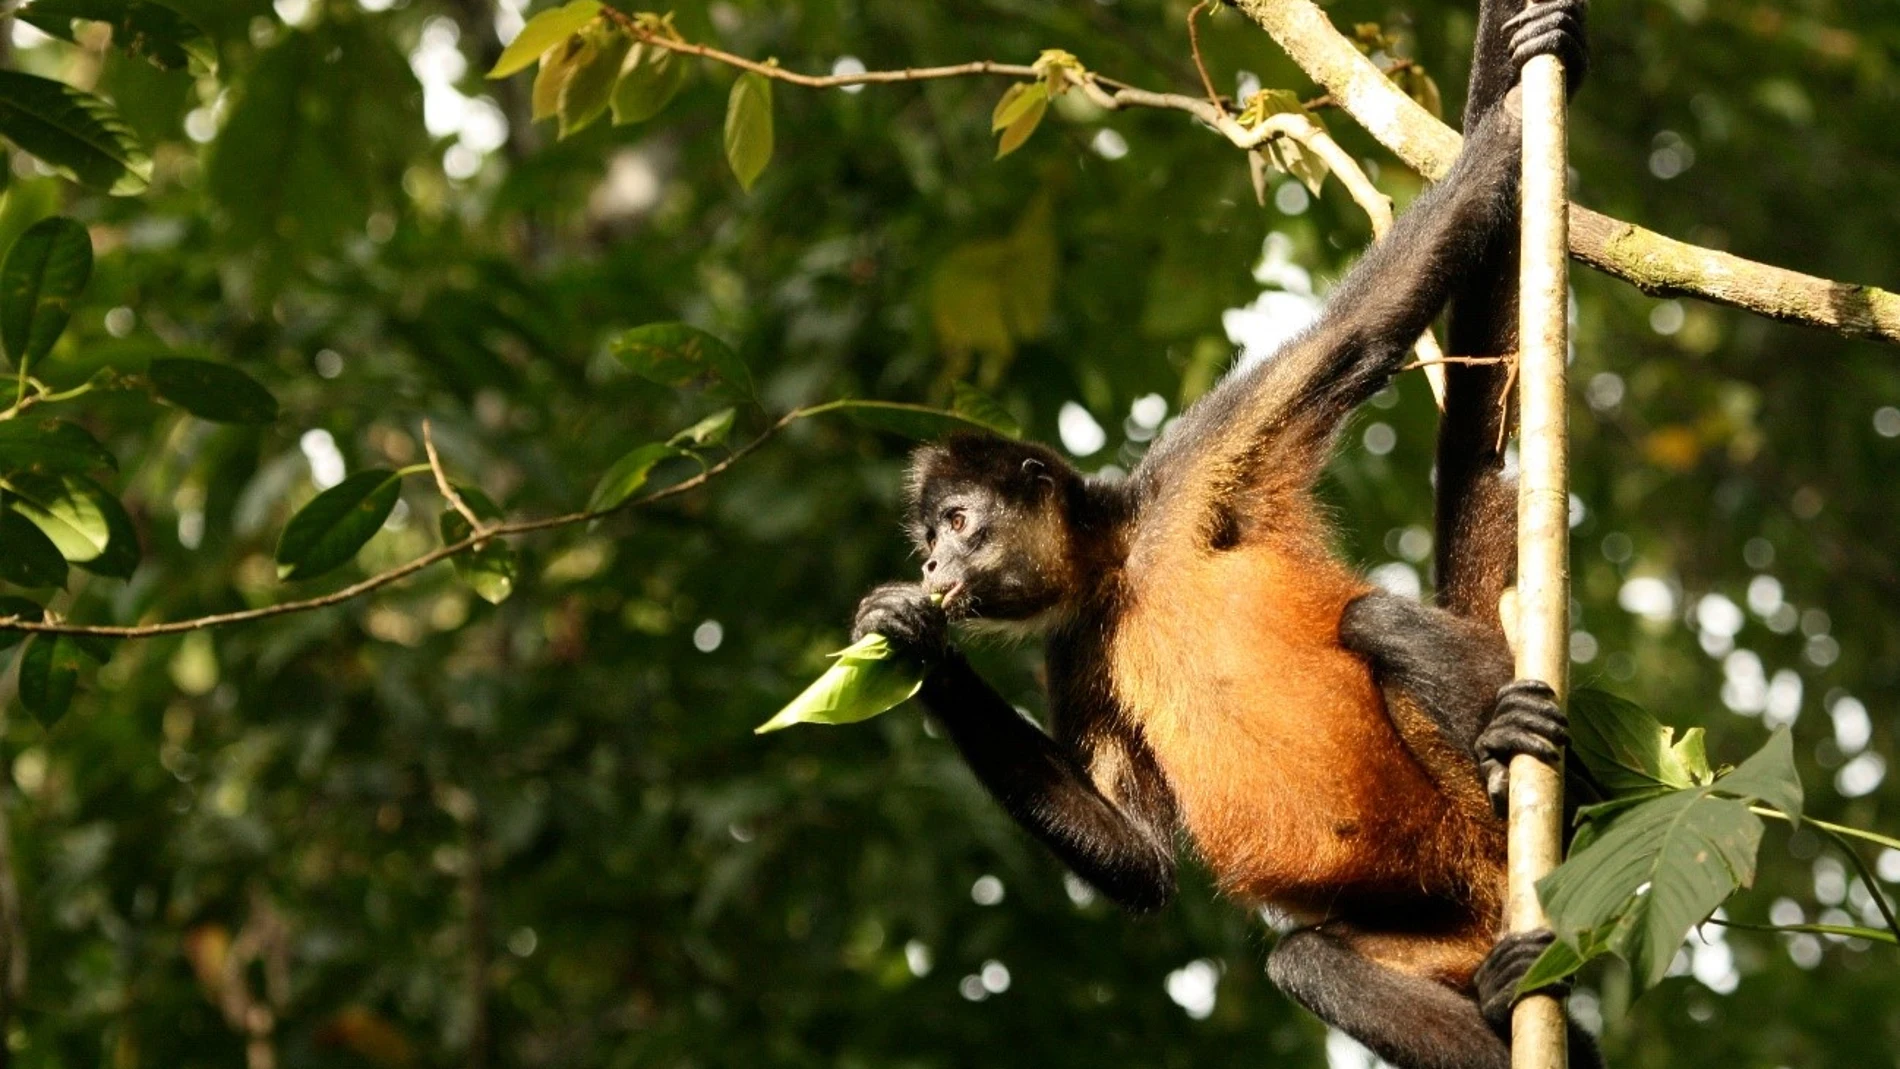 Mono araña centroamericano, fotografiado en Costa Rica.